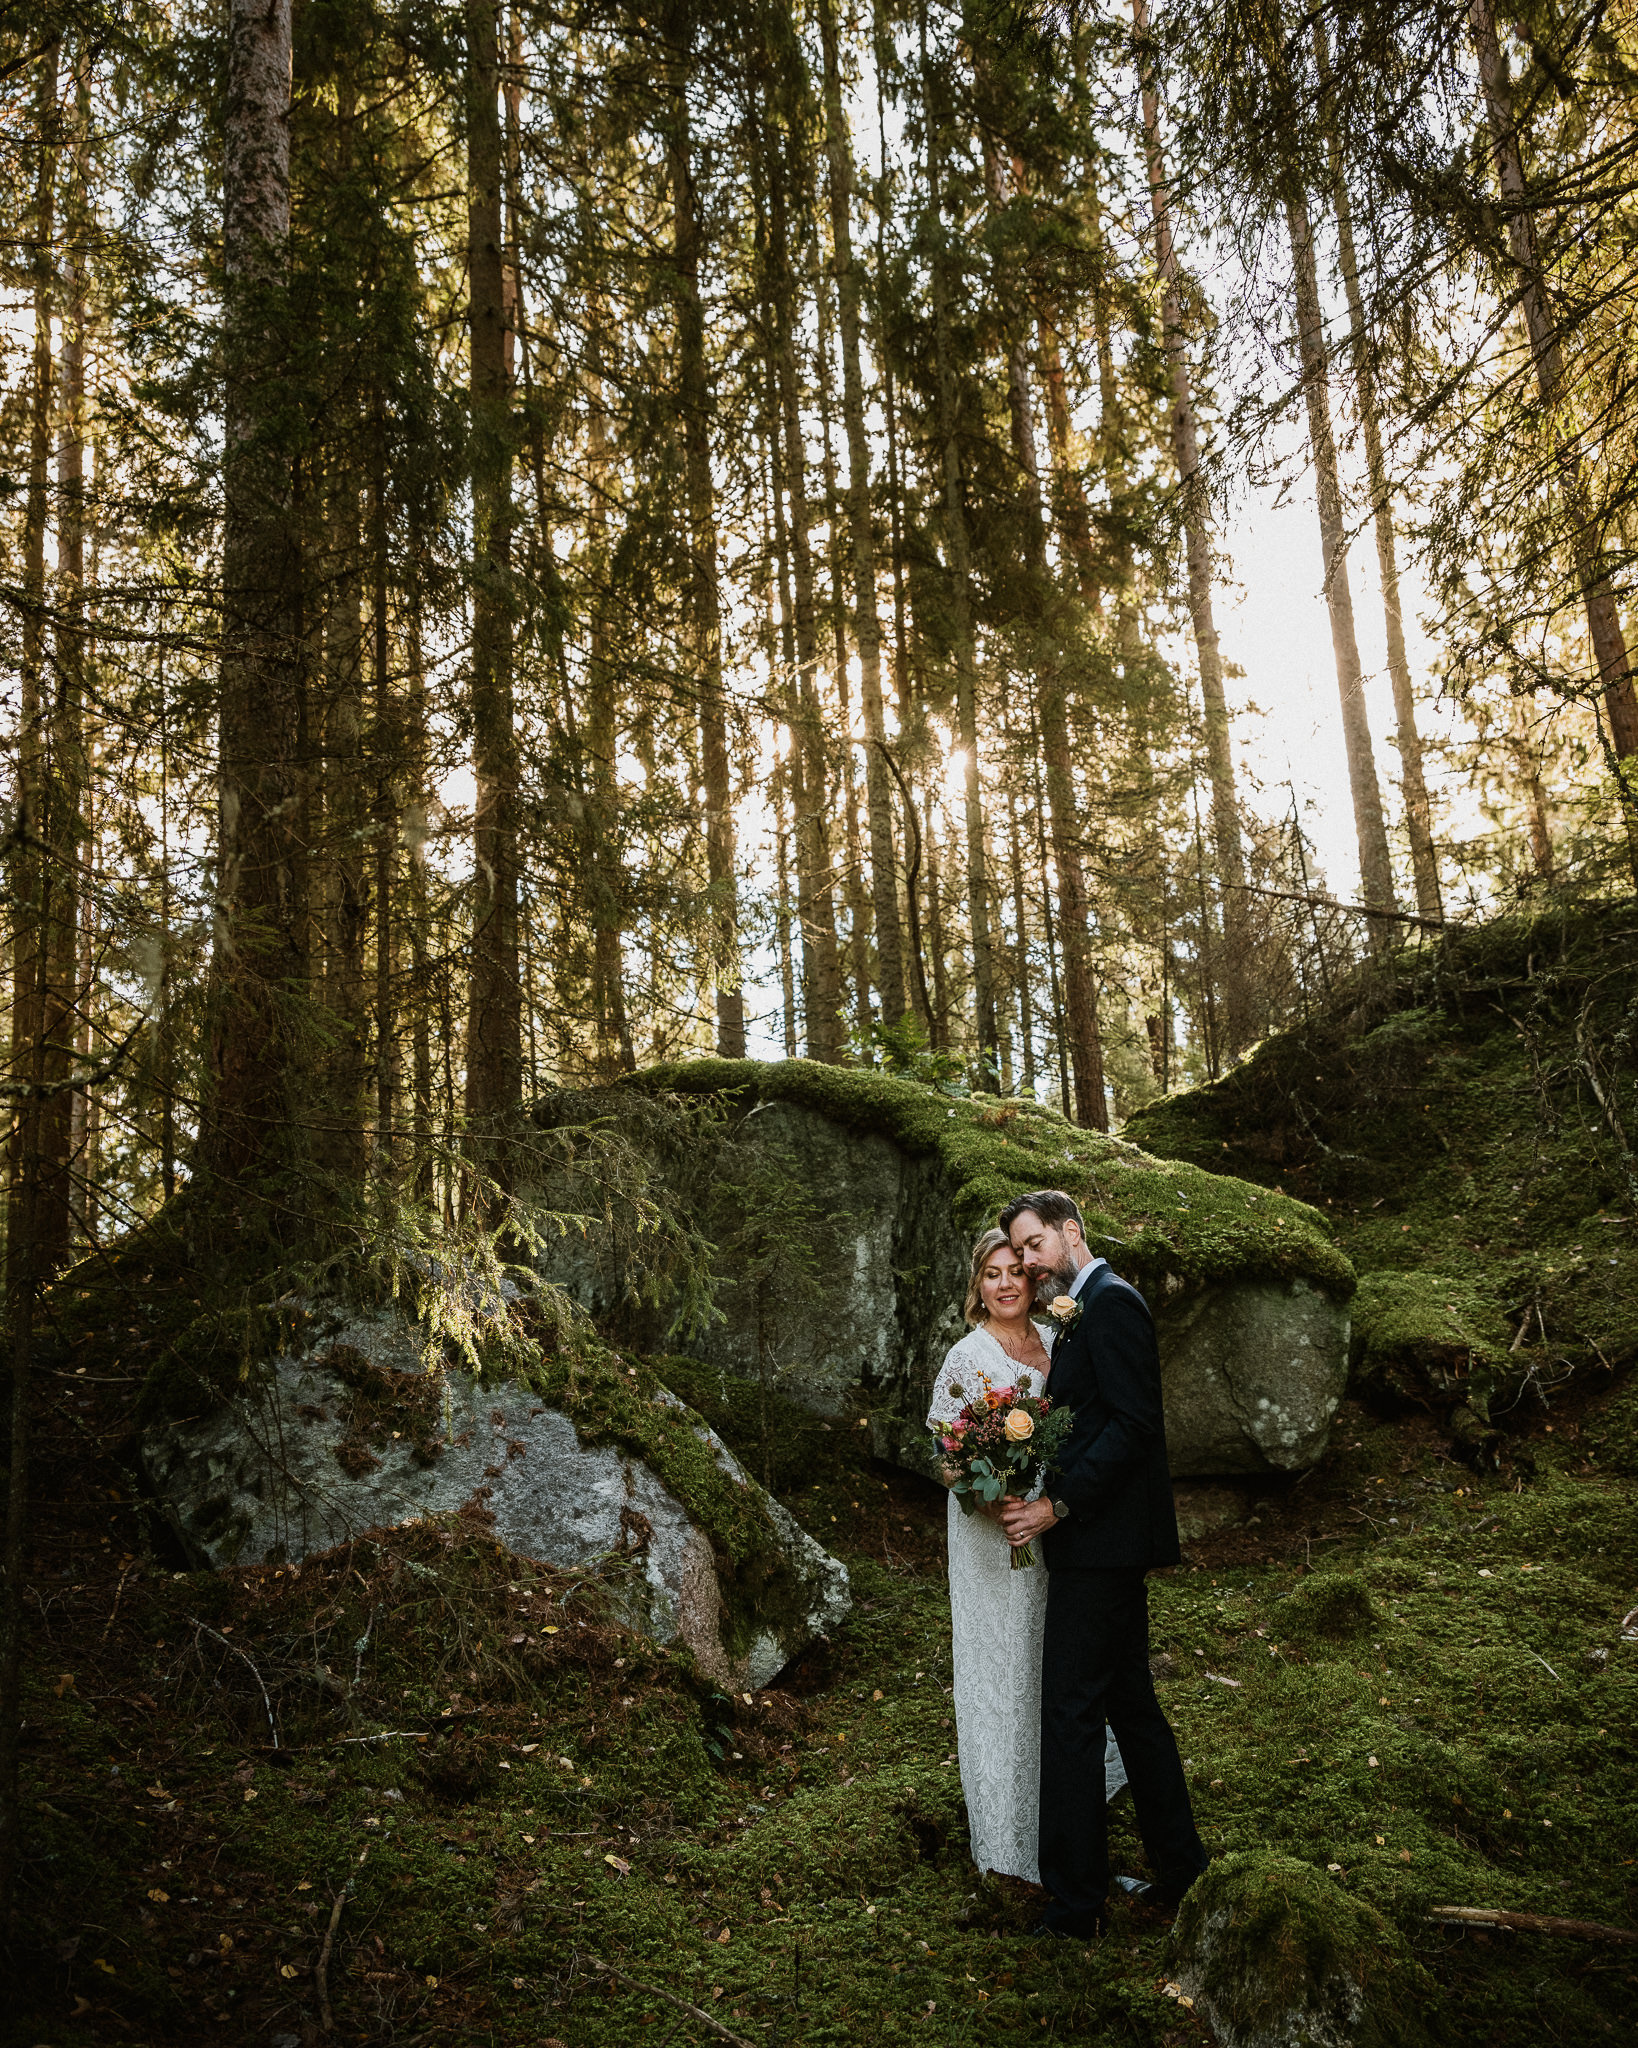 Bröllopsfotografering i skogen med inspiration av John Bauer